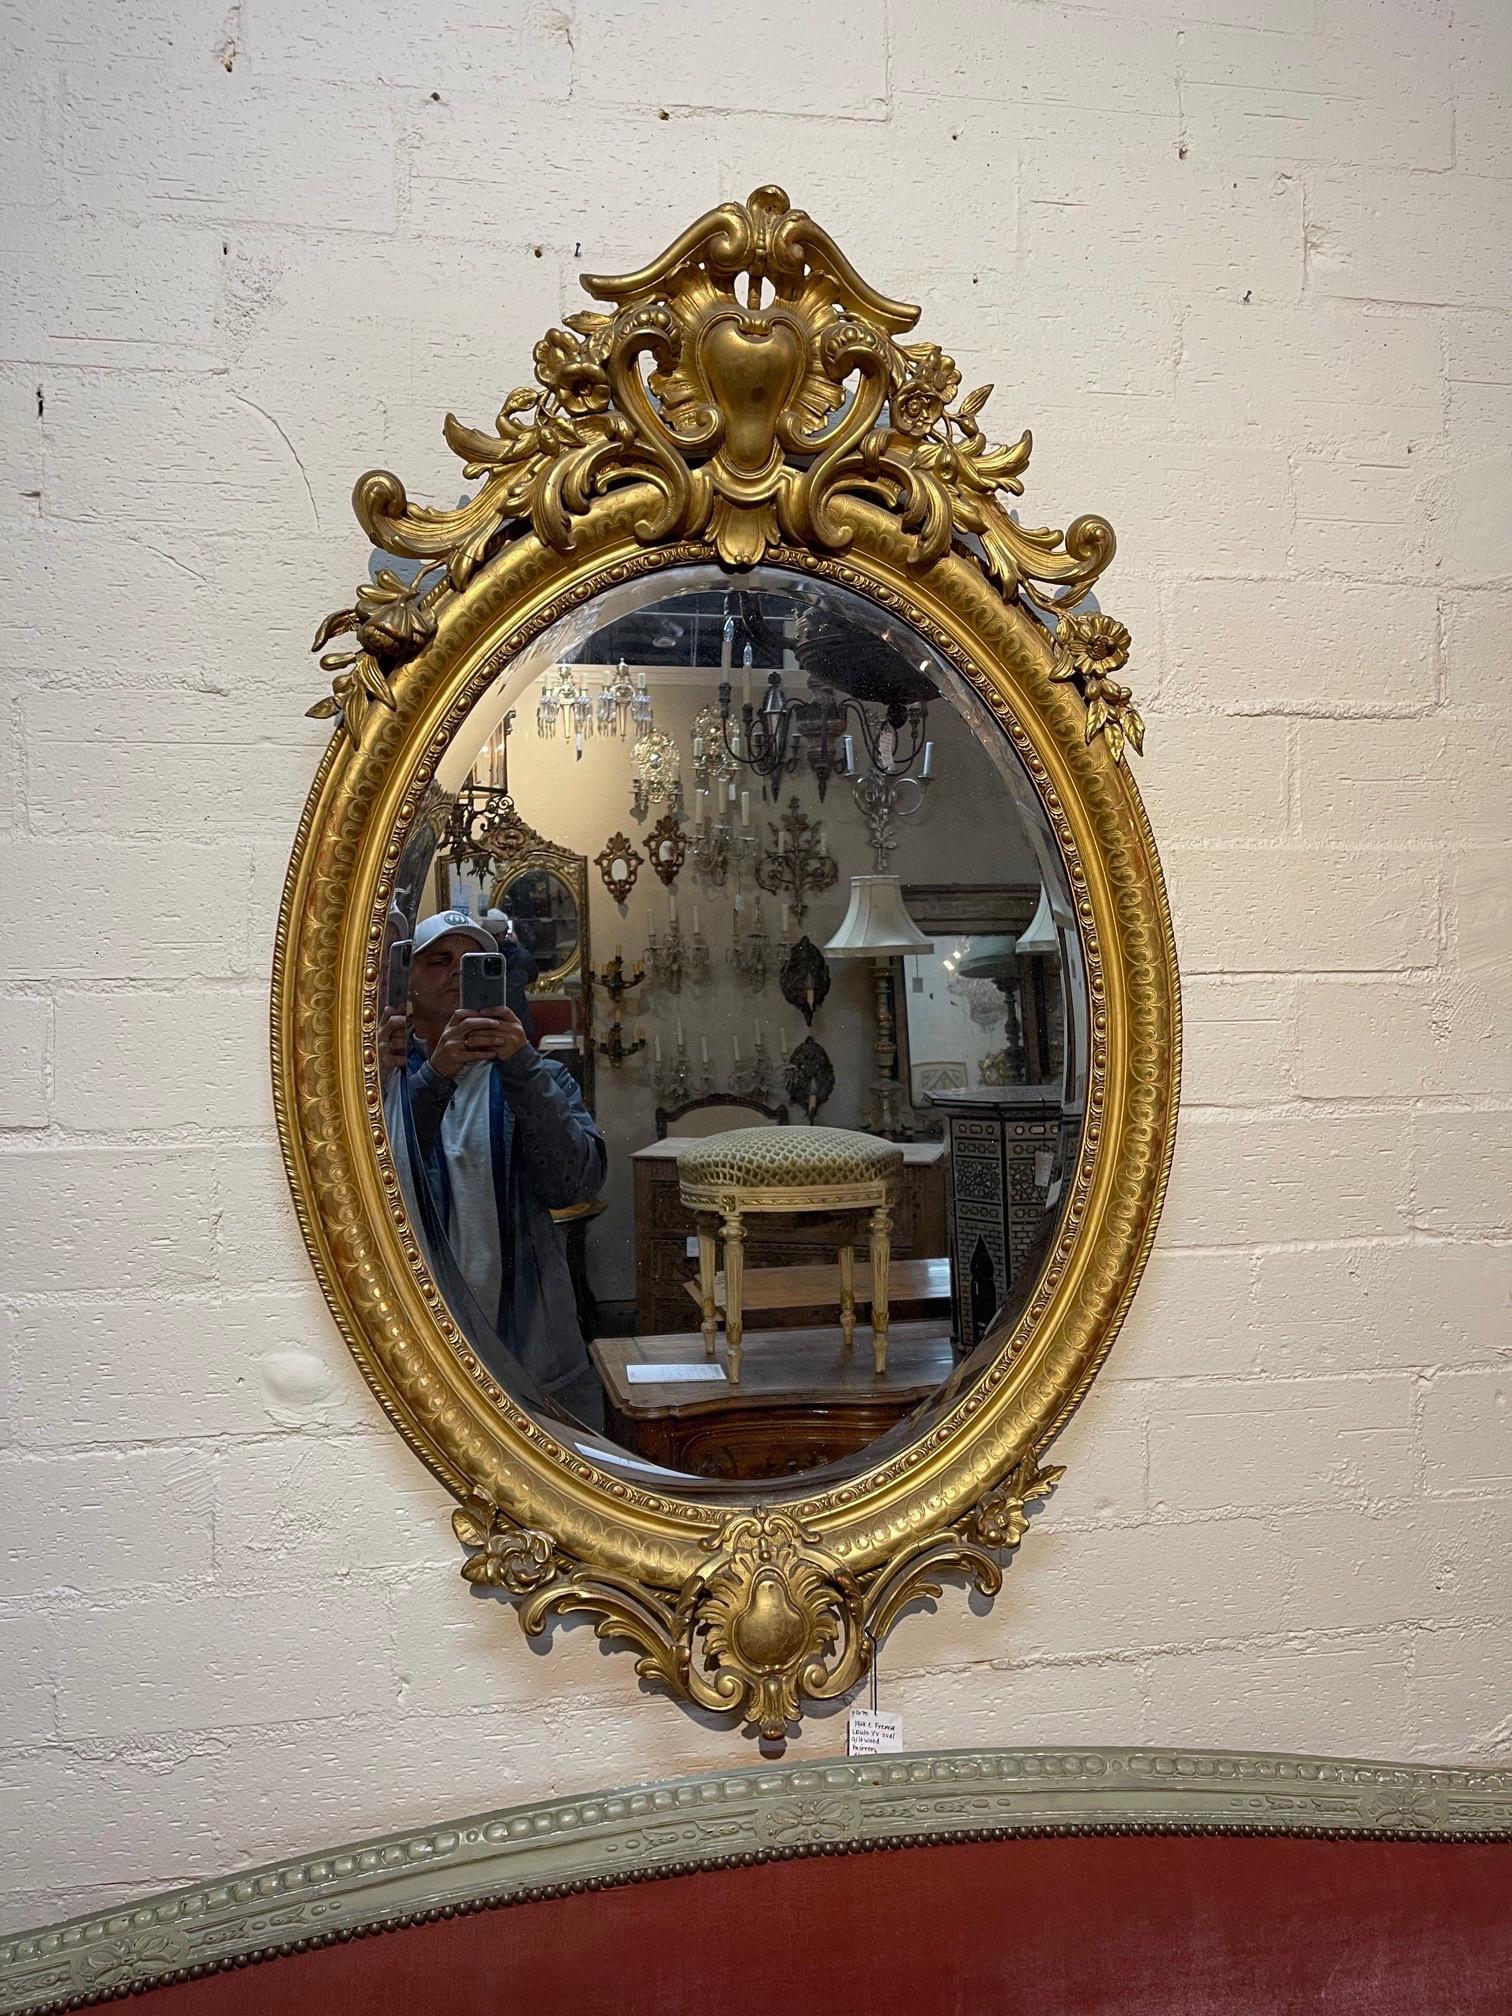 Elegant miroir ovale en bois doré Louis XV du 19ème siècle. Magnifiques sculptures avec des images florales et des écussons. Charmant !